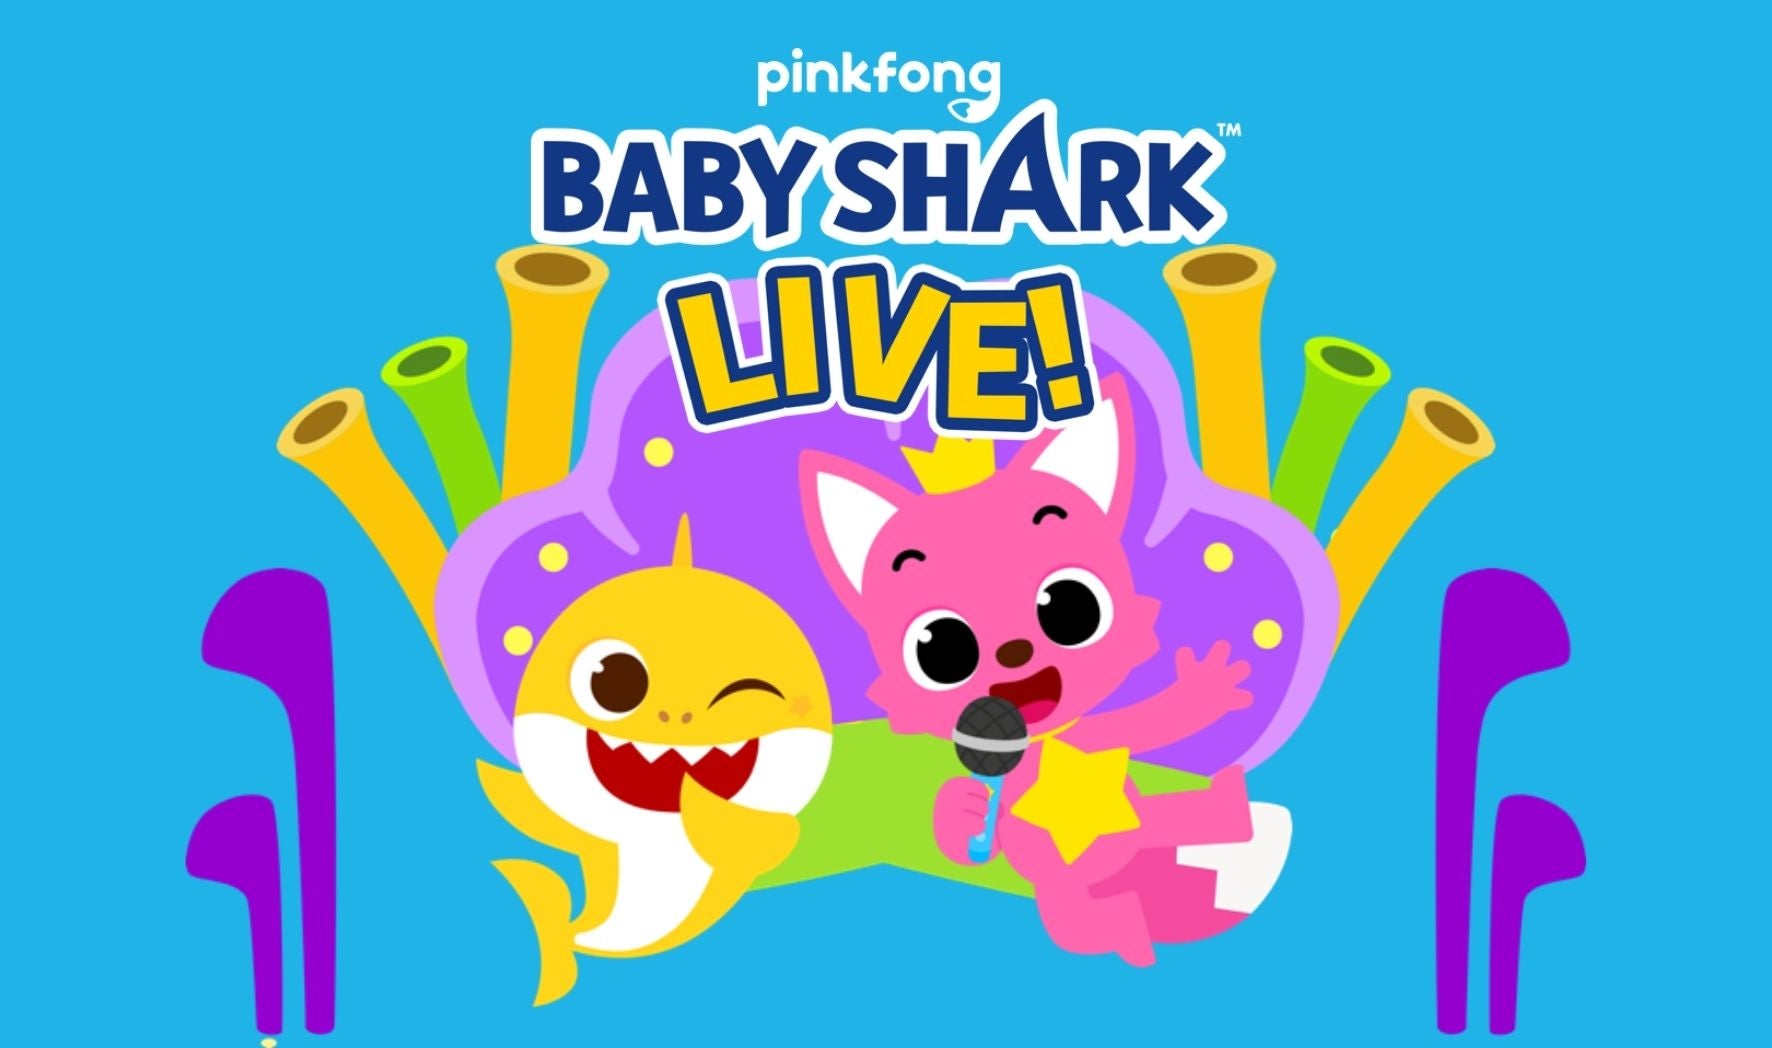 More Info for Baby Shark Live 2022 Splash Tour